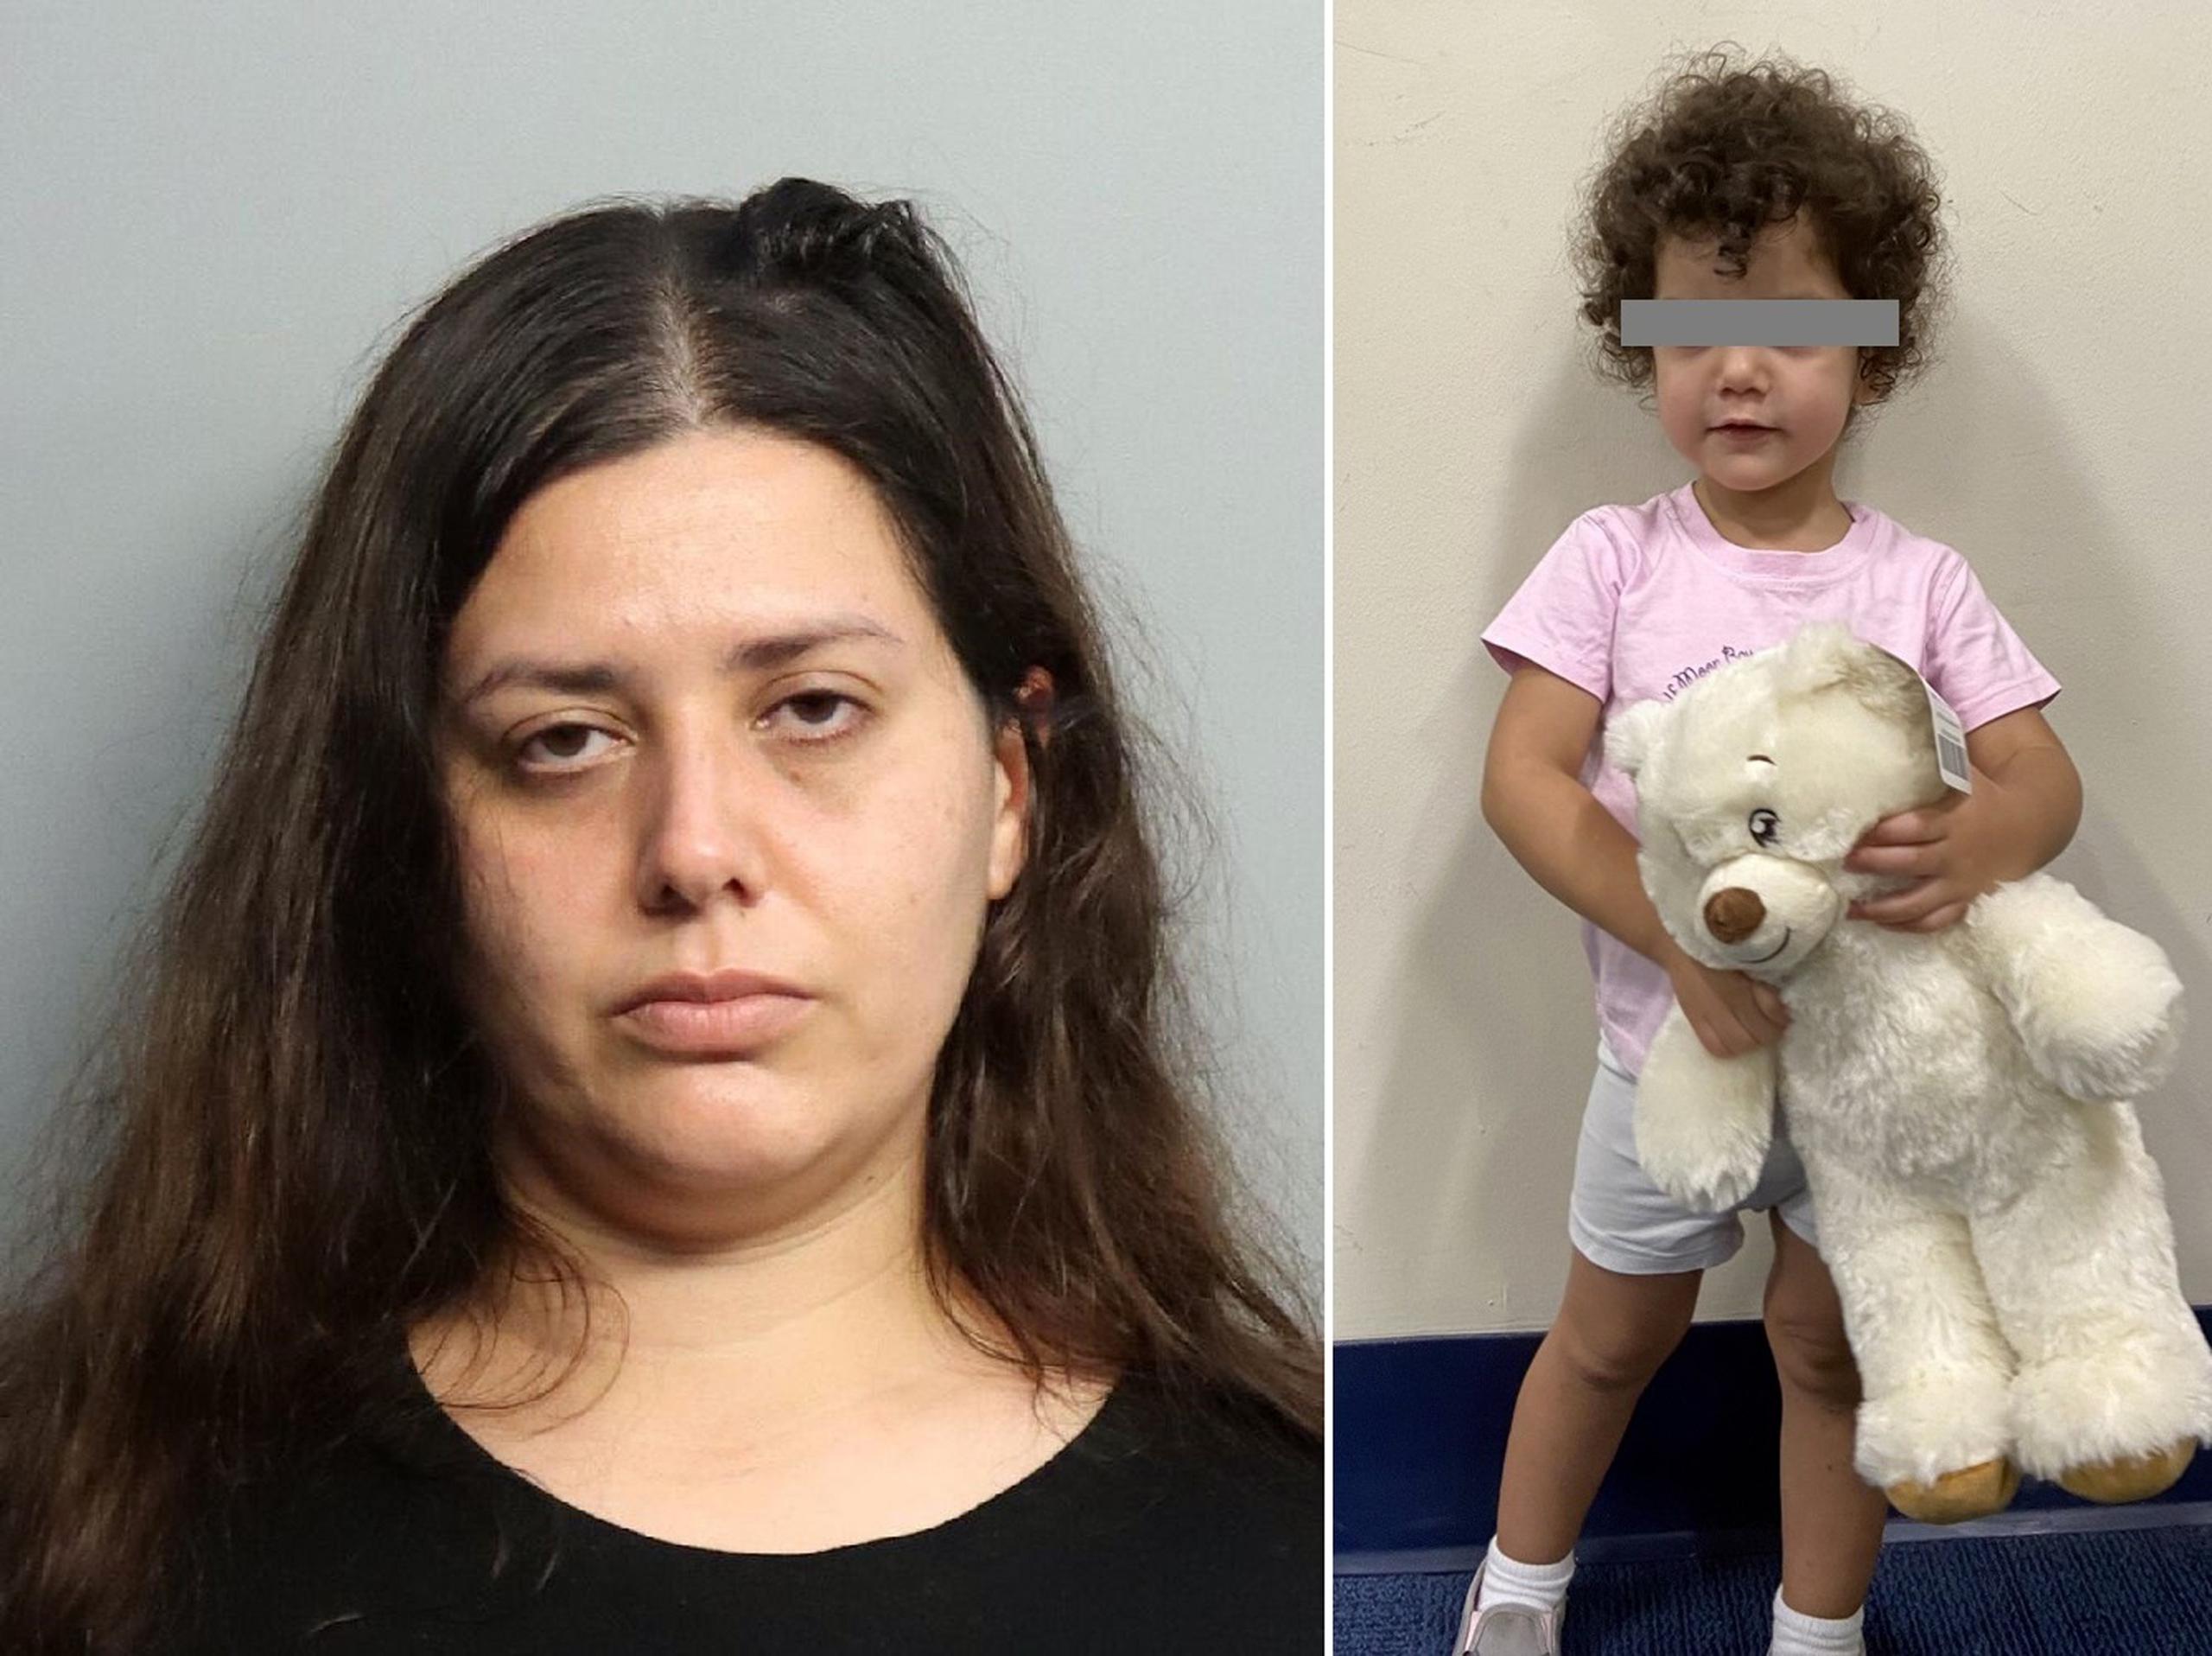 El informe de arresto señaló que la mujer, identificada como Carolina Vizcarra, de 33 años, regresó al hospital “muchas horas” después de abandonar a su hija.